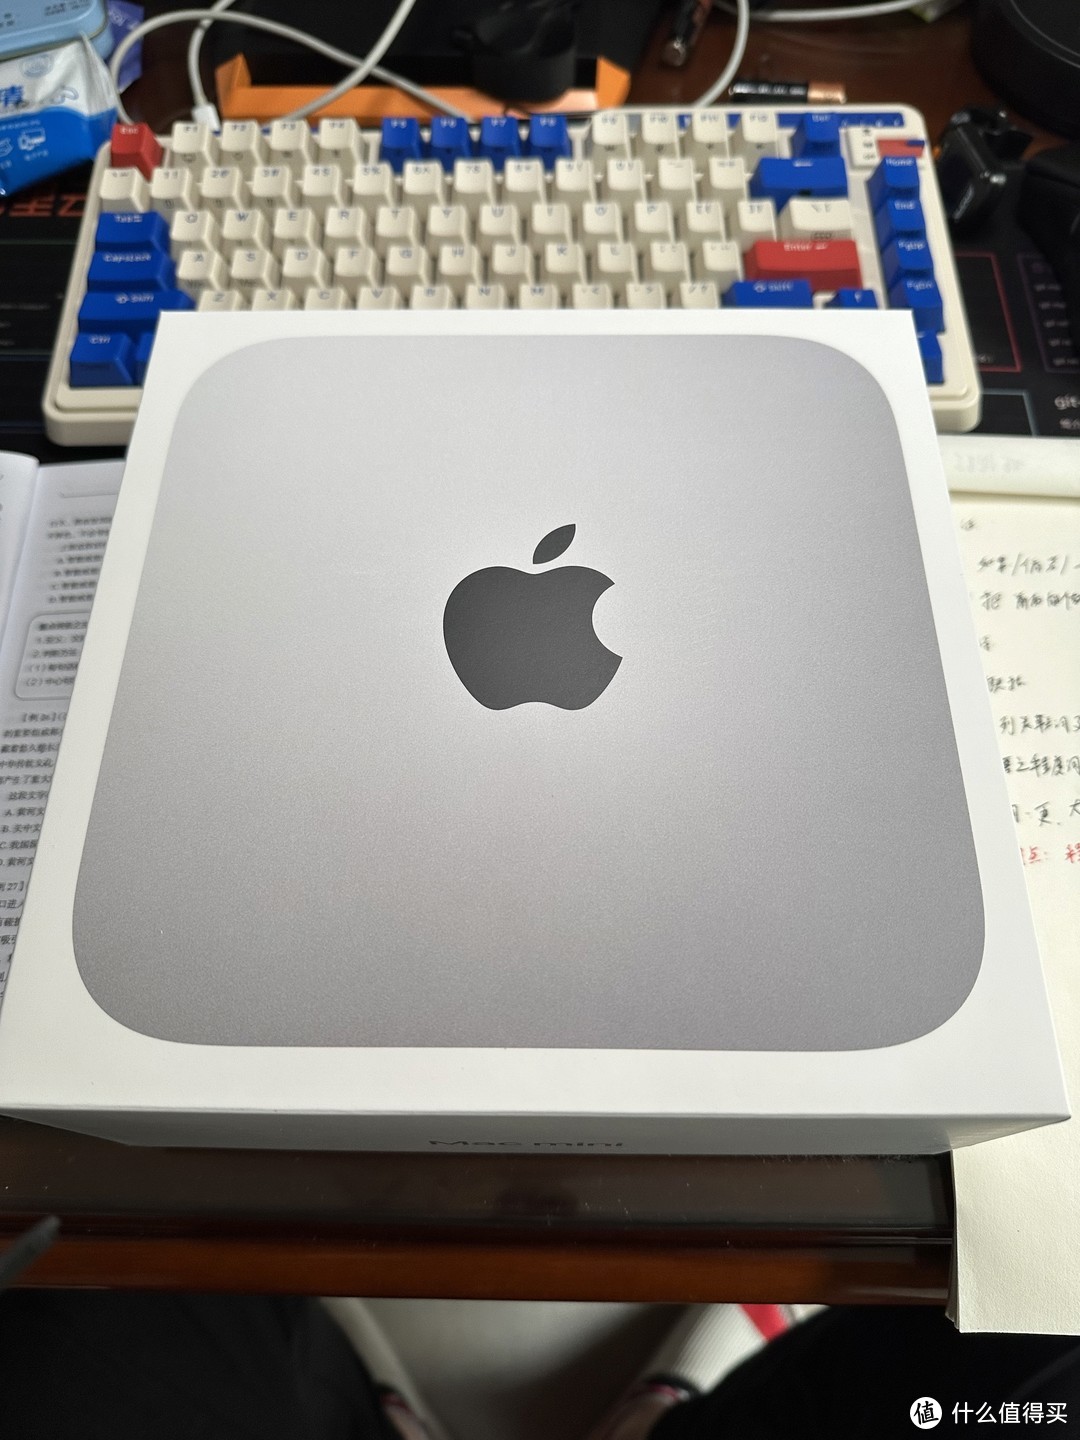 3699的Mac或许是苹果产品线中性价比最高的产品